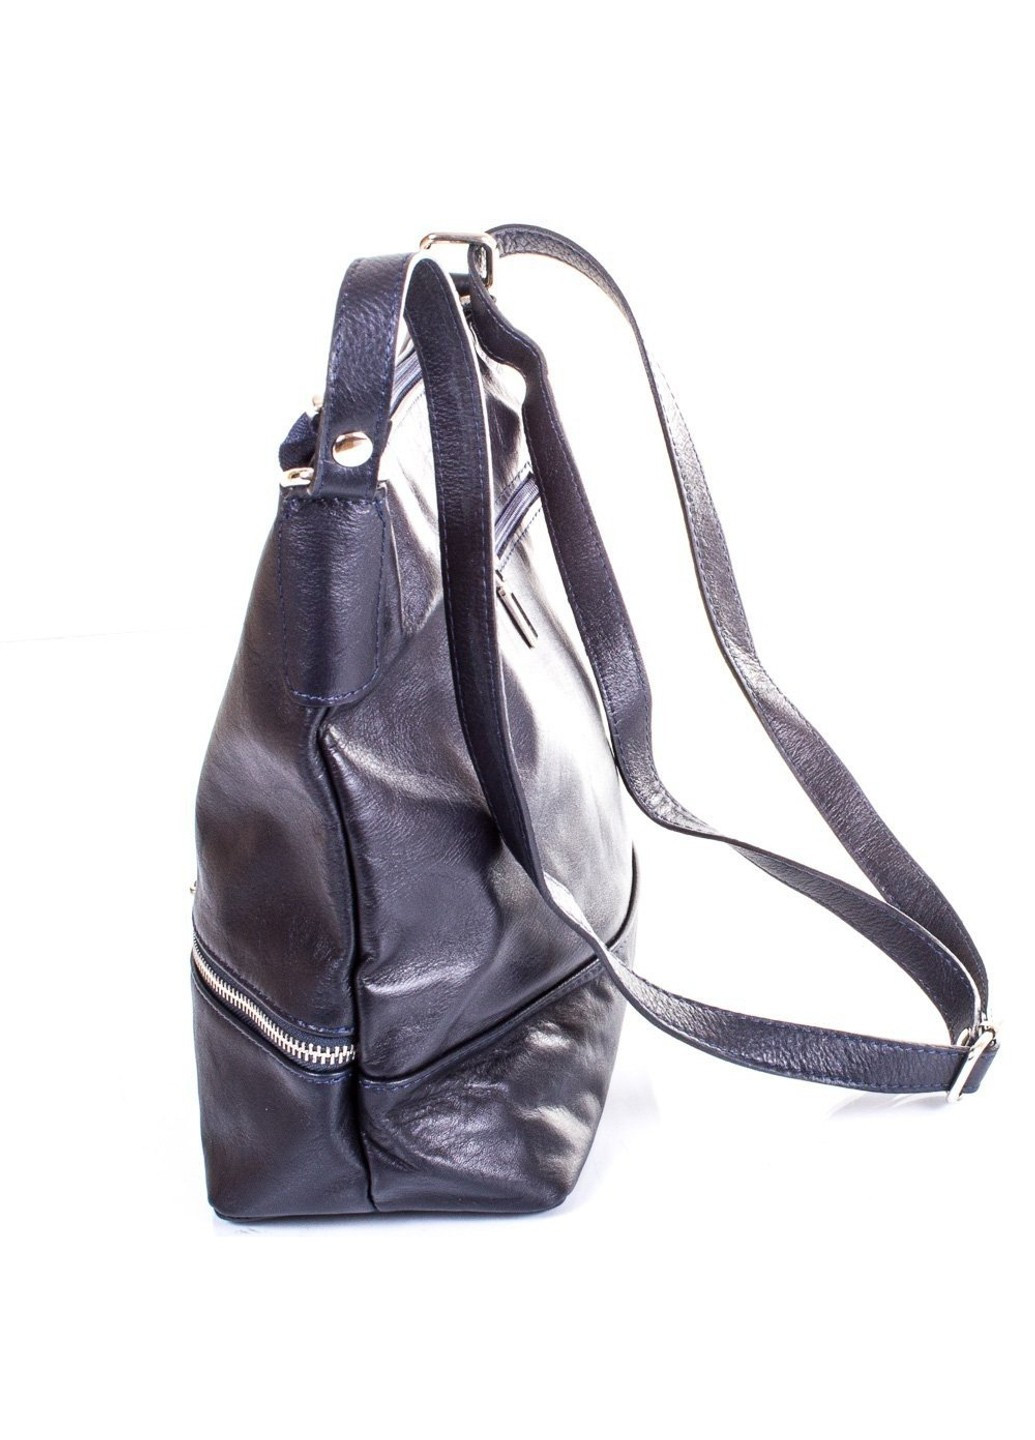 Женская синяя кожаная сумка Eterno (262975718)